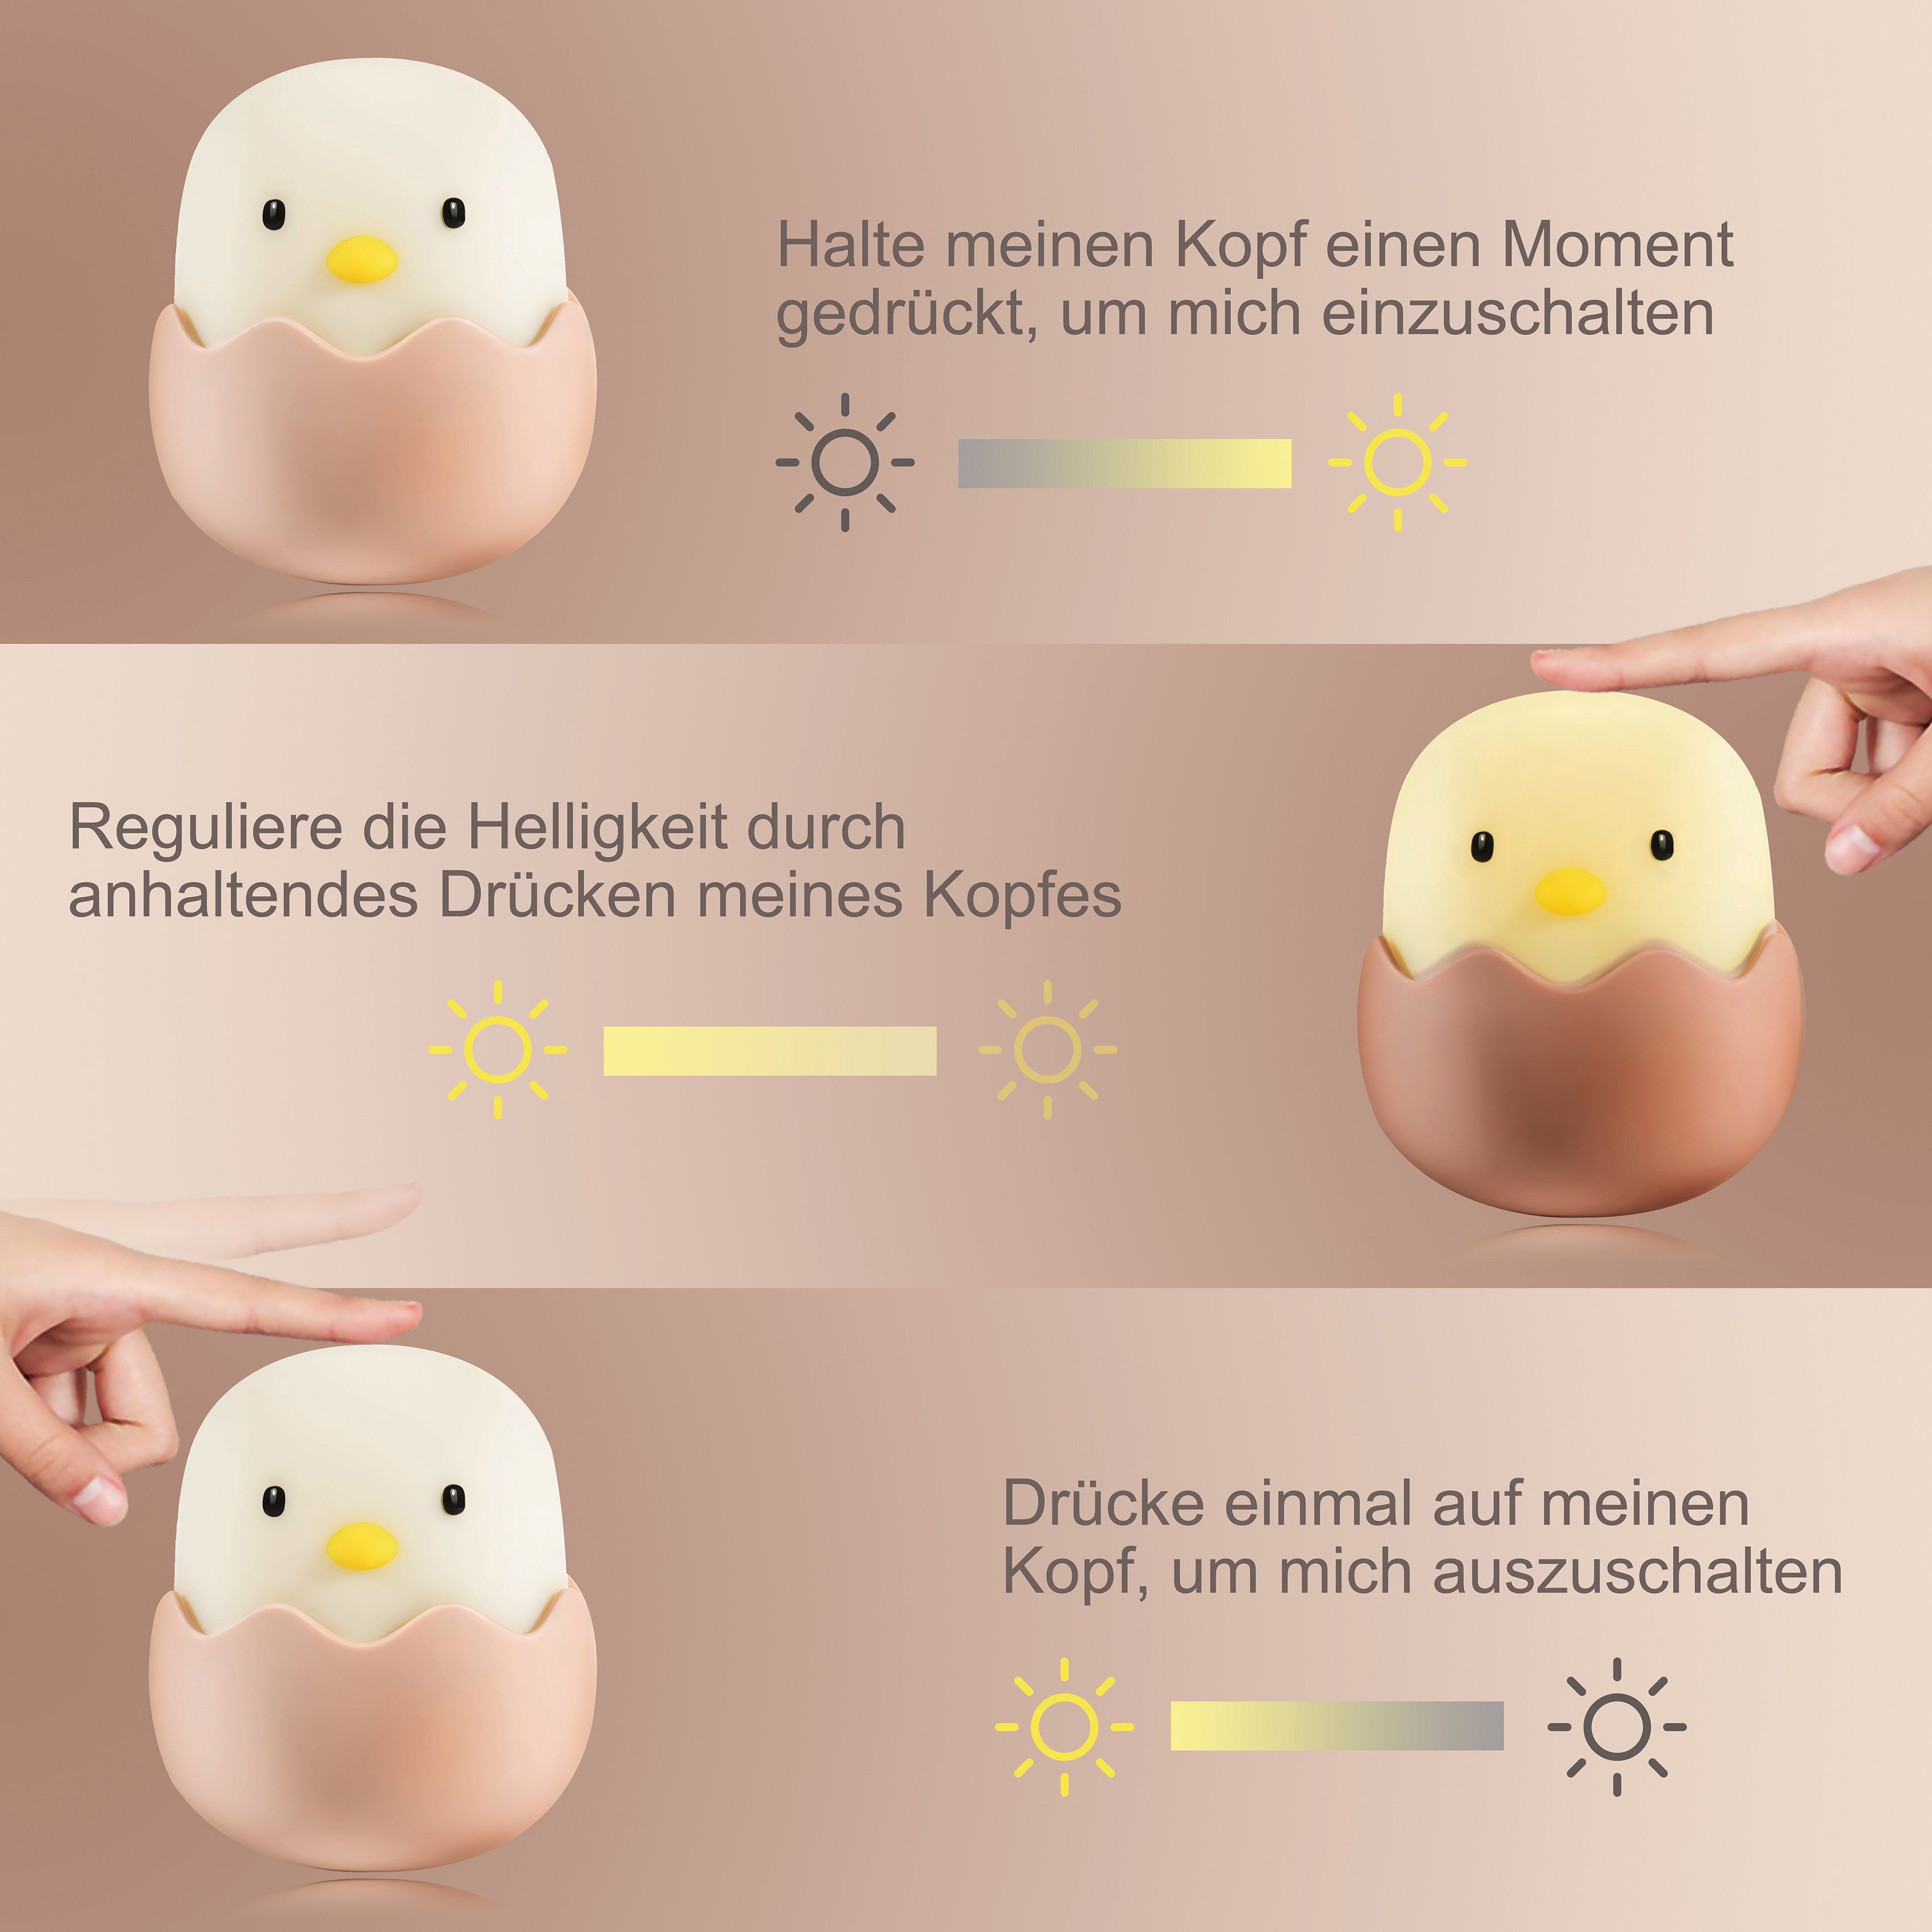 niermann LED Eggy integriert, Eggy Egg LED Nachtlicht Nachtlicht Egg, fest